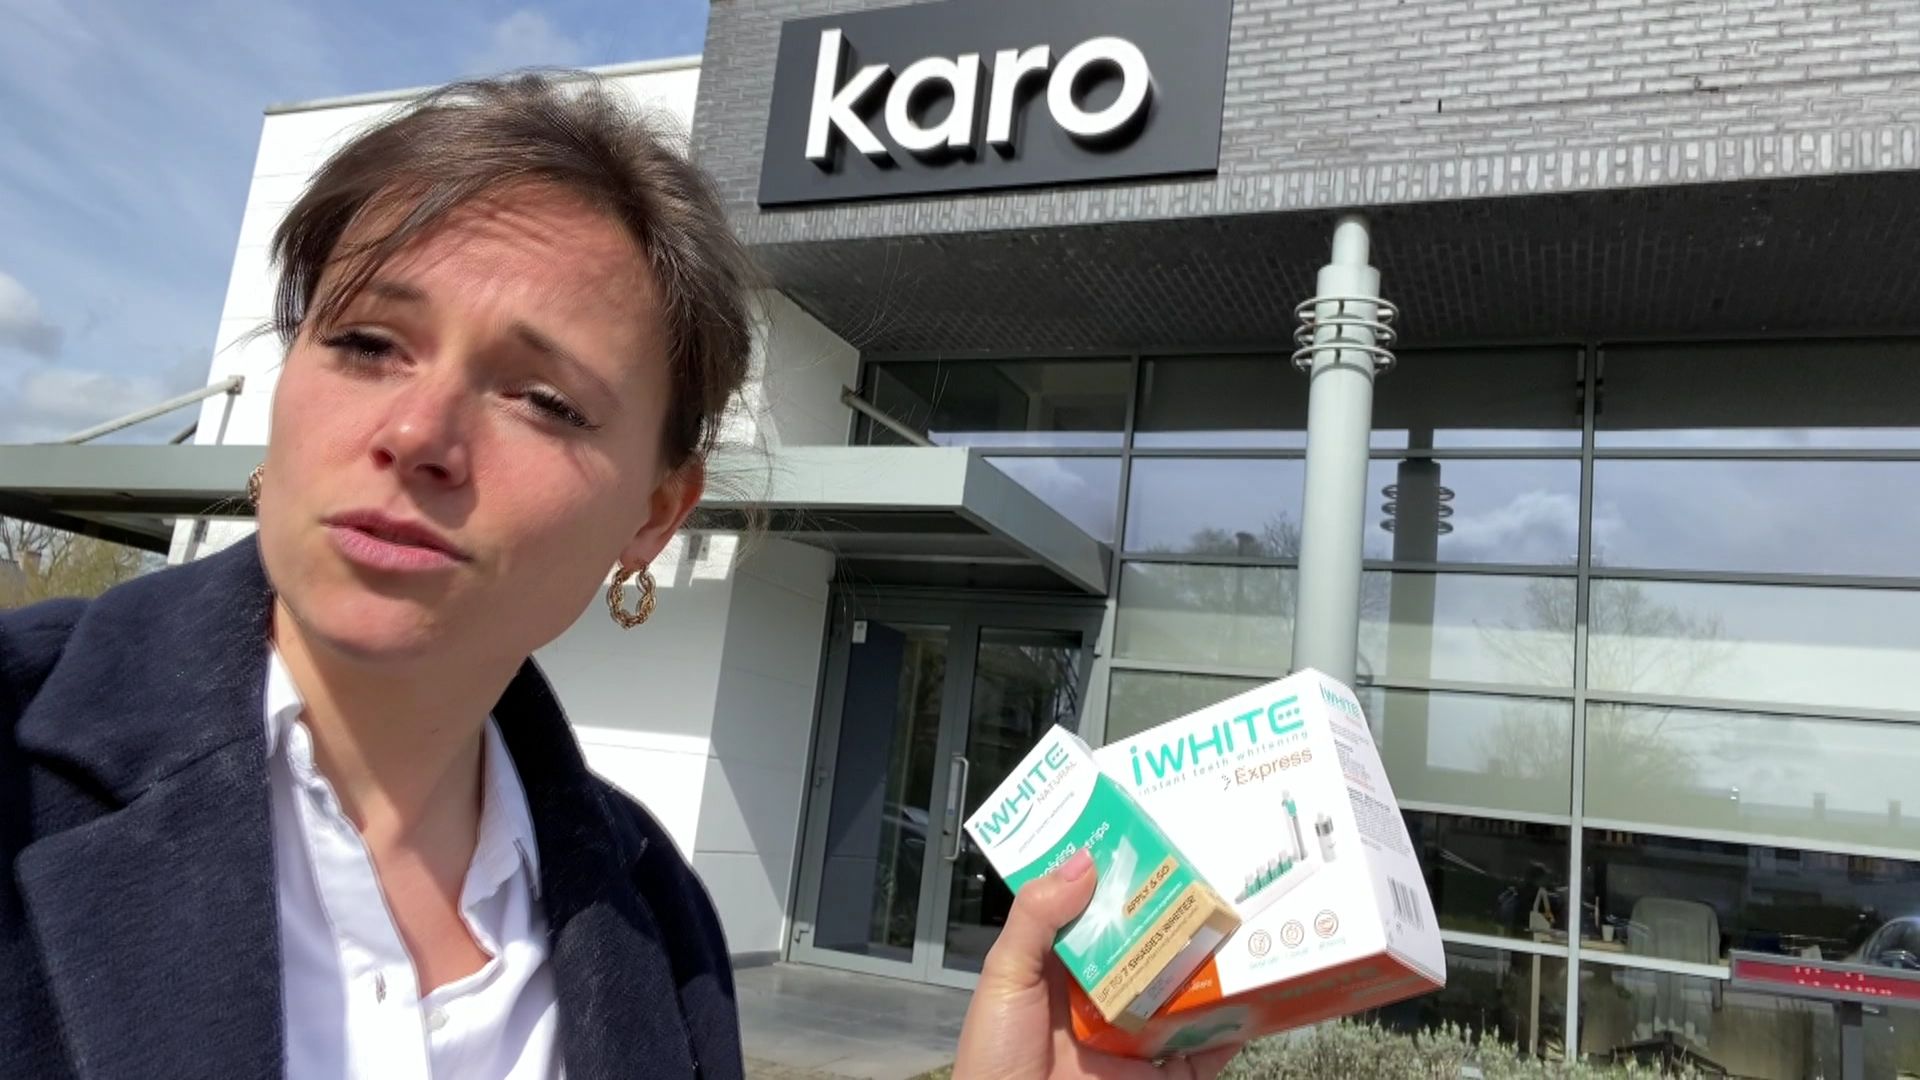 Devant les portes de l’entreprise Karo qui fabrique les produits Iwhite.